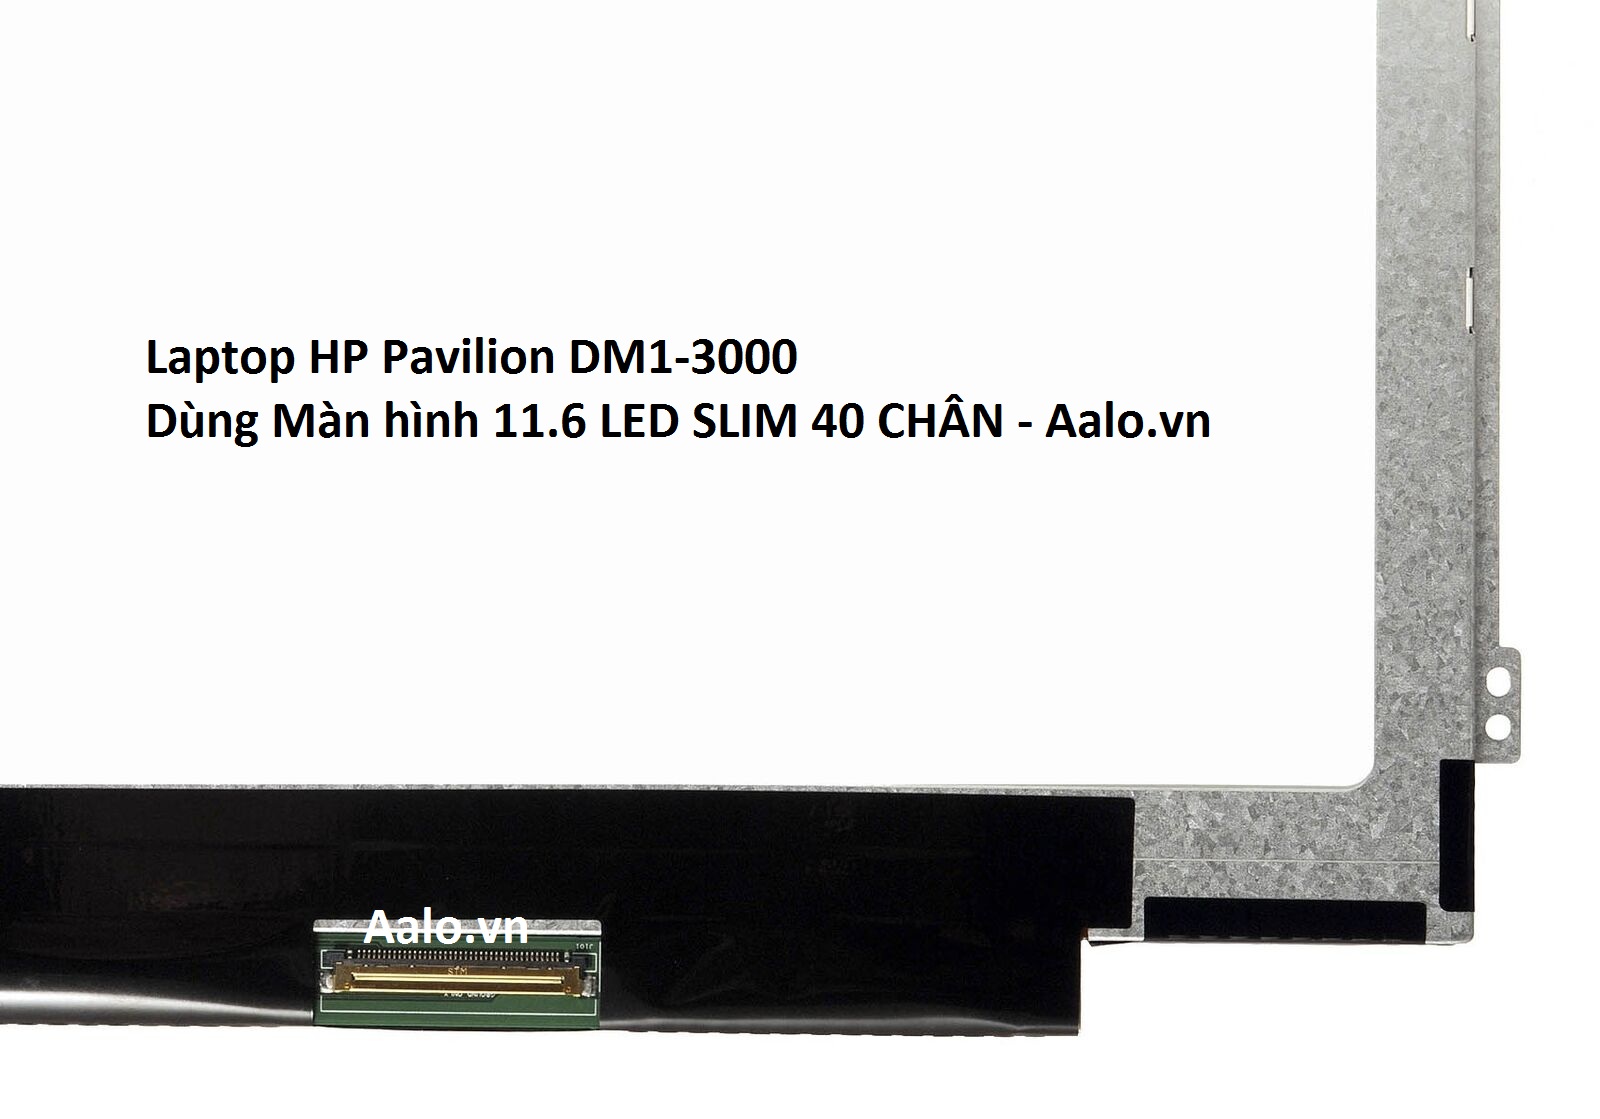 Màn hình Laptop HP Pavilion DM1-3000 - Aalo.vn